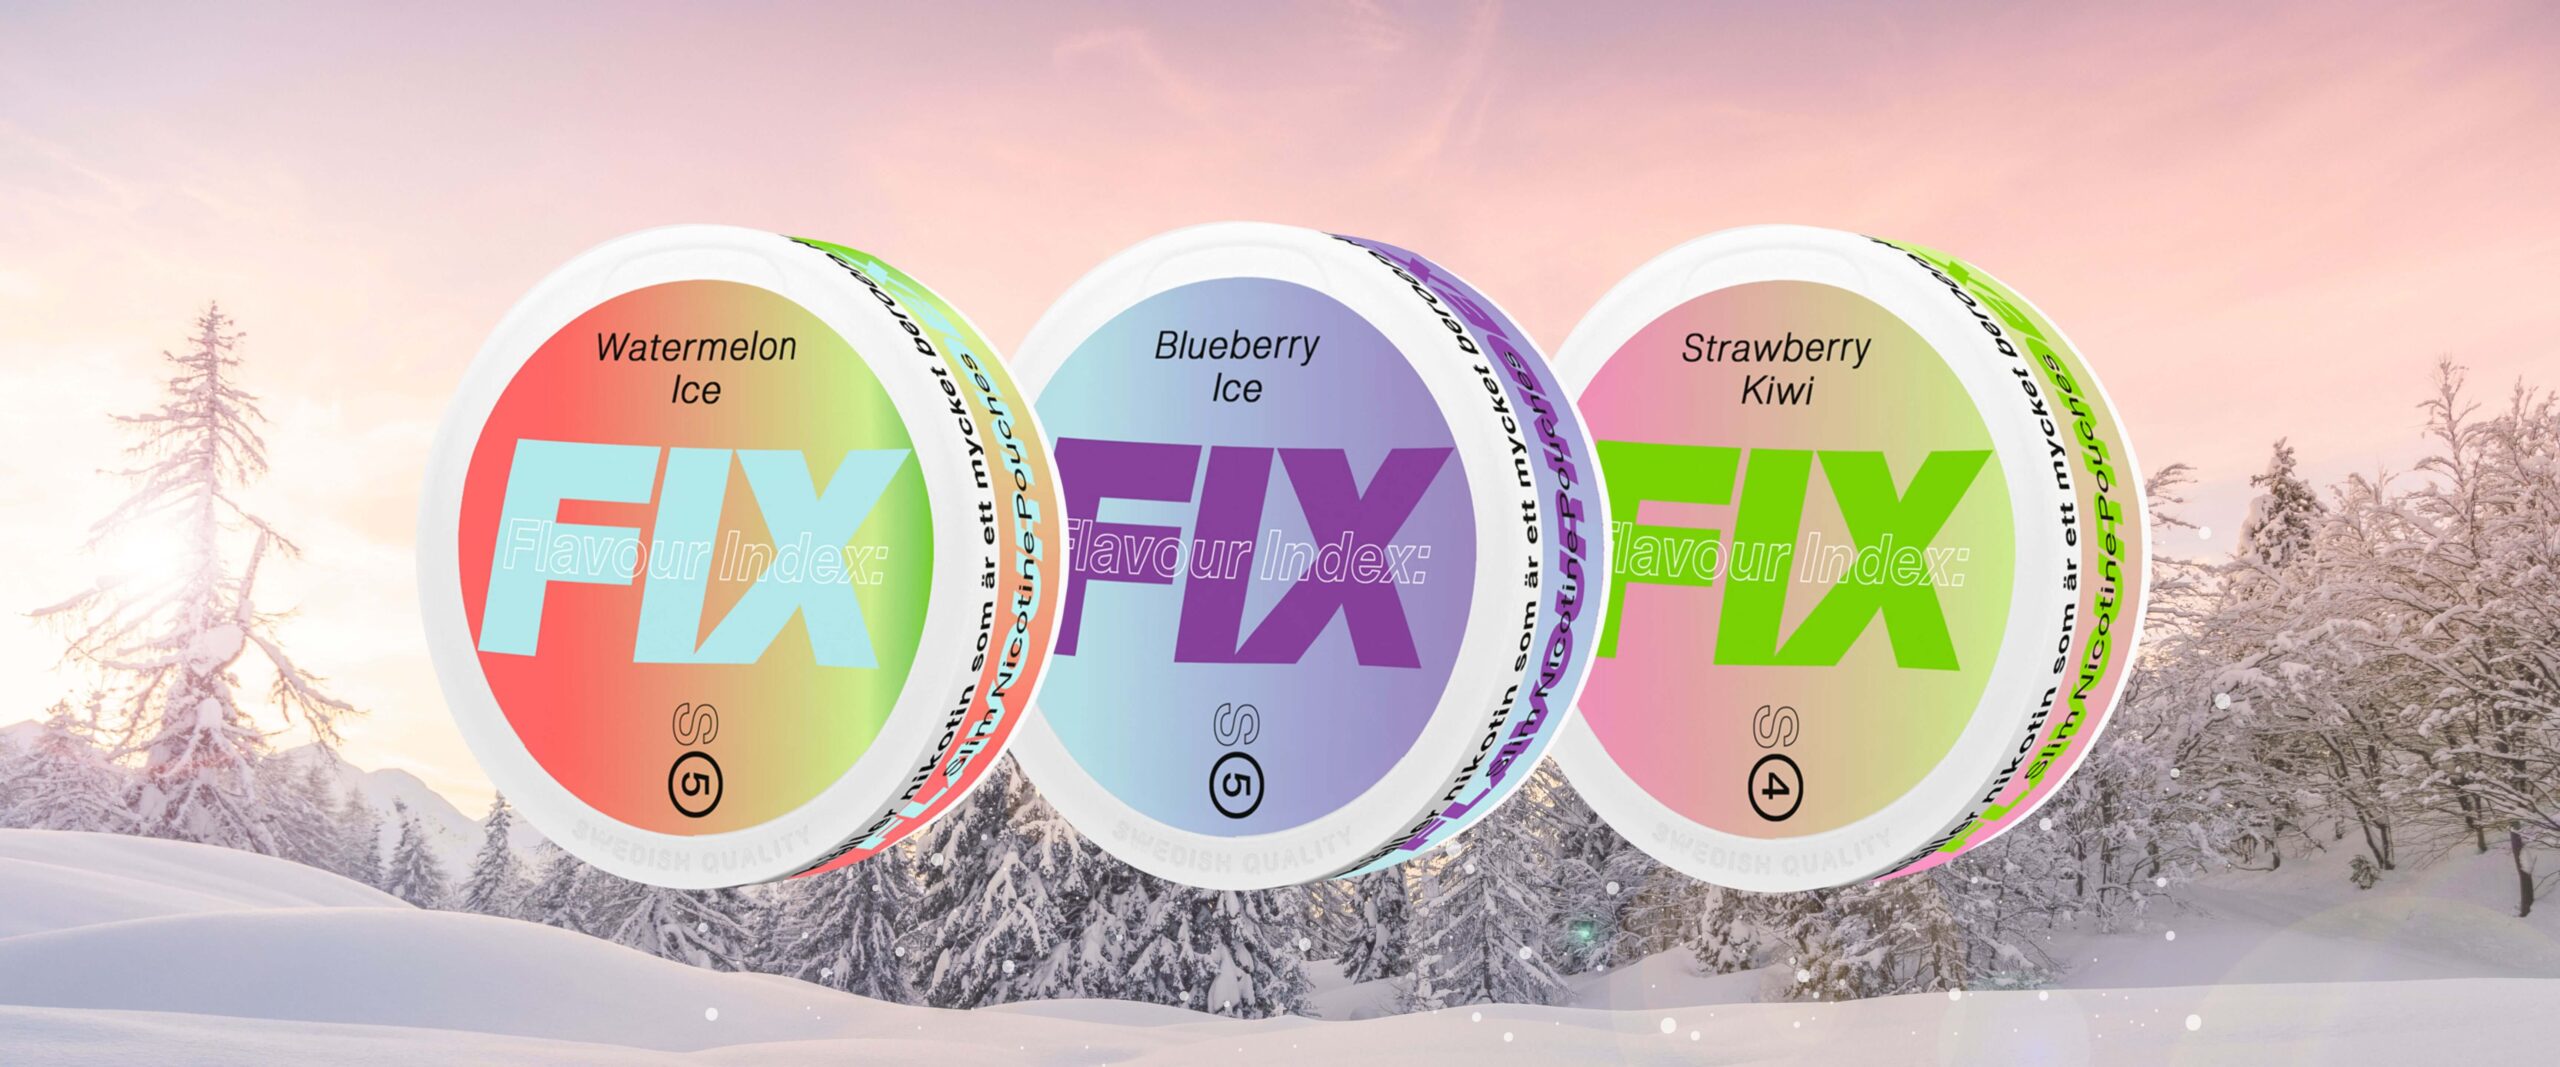 FIX – varumärket som med stormsteg klivit in på snusmarknaden